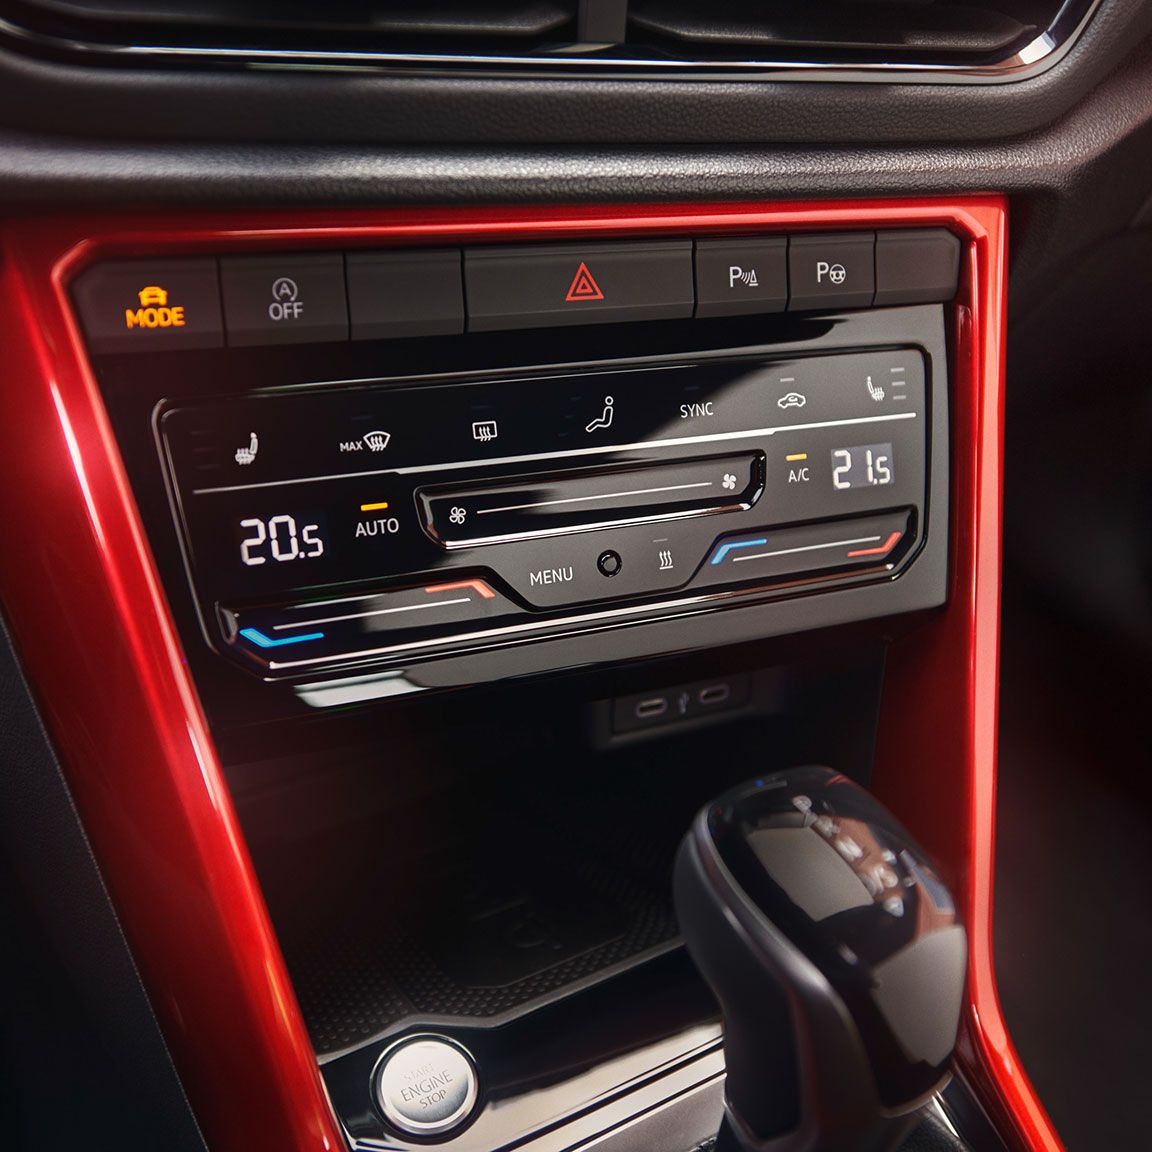 Detailansicht der Klimaanlage im VW T-Roc Cabriolet.